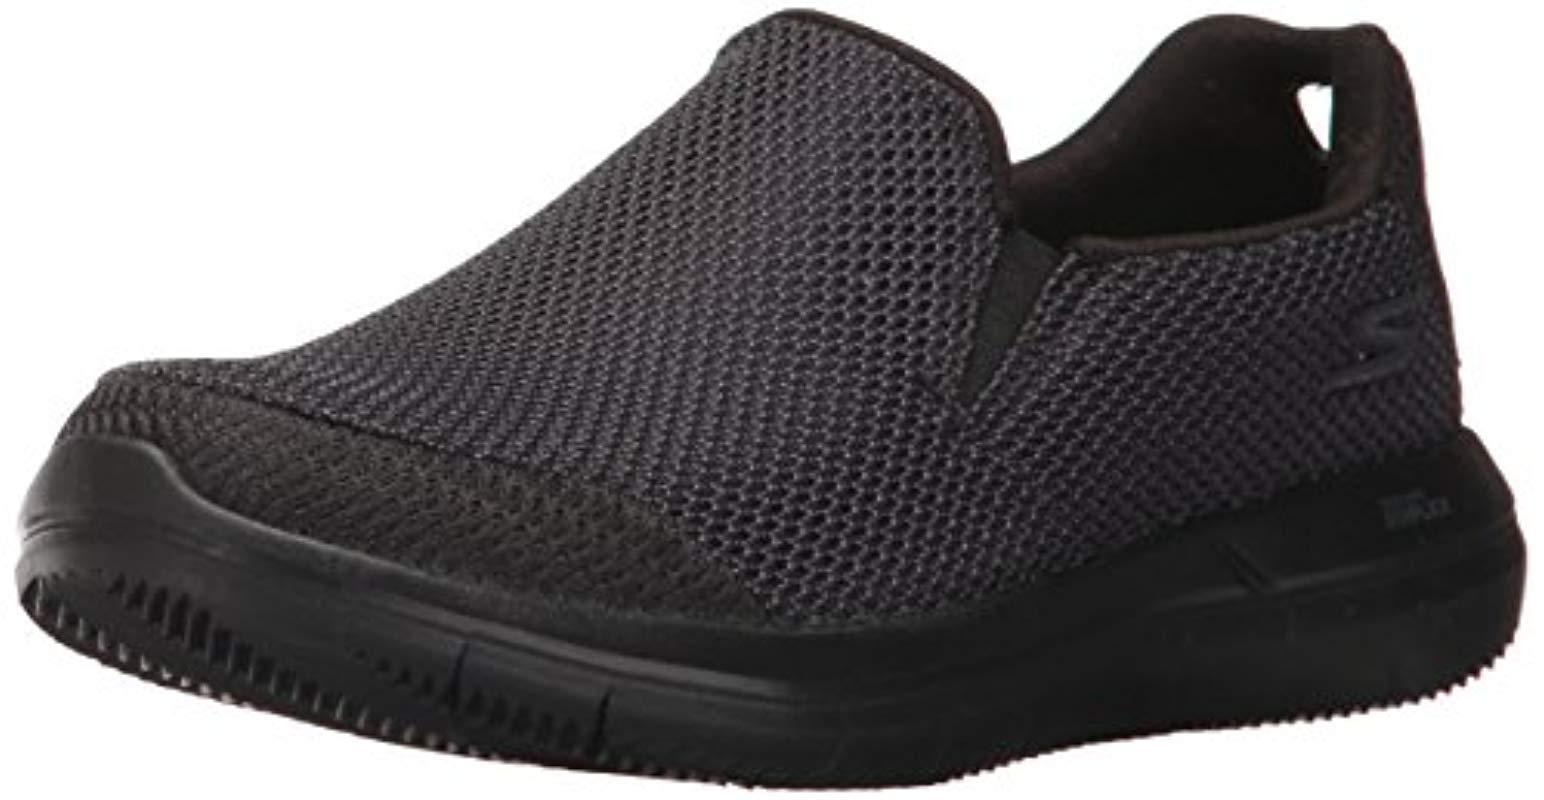 Skechers Performance Go Flex 2-14992 Walking Shoe in Black | Lyst